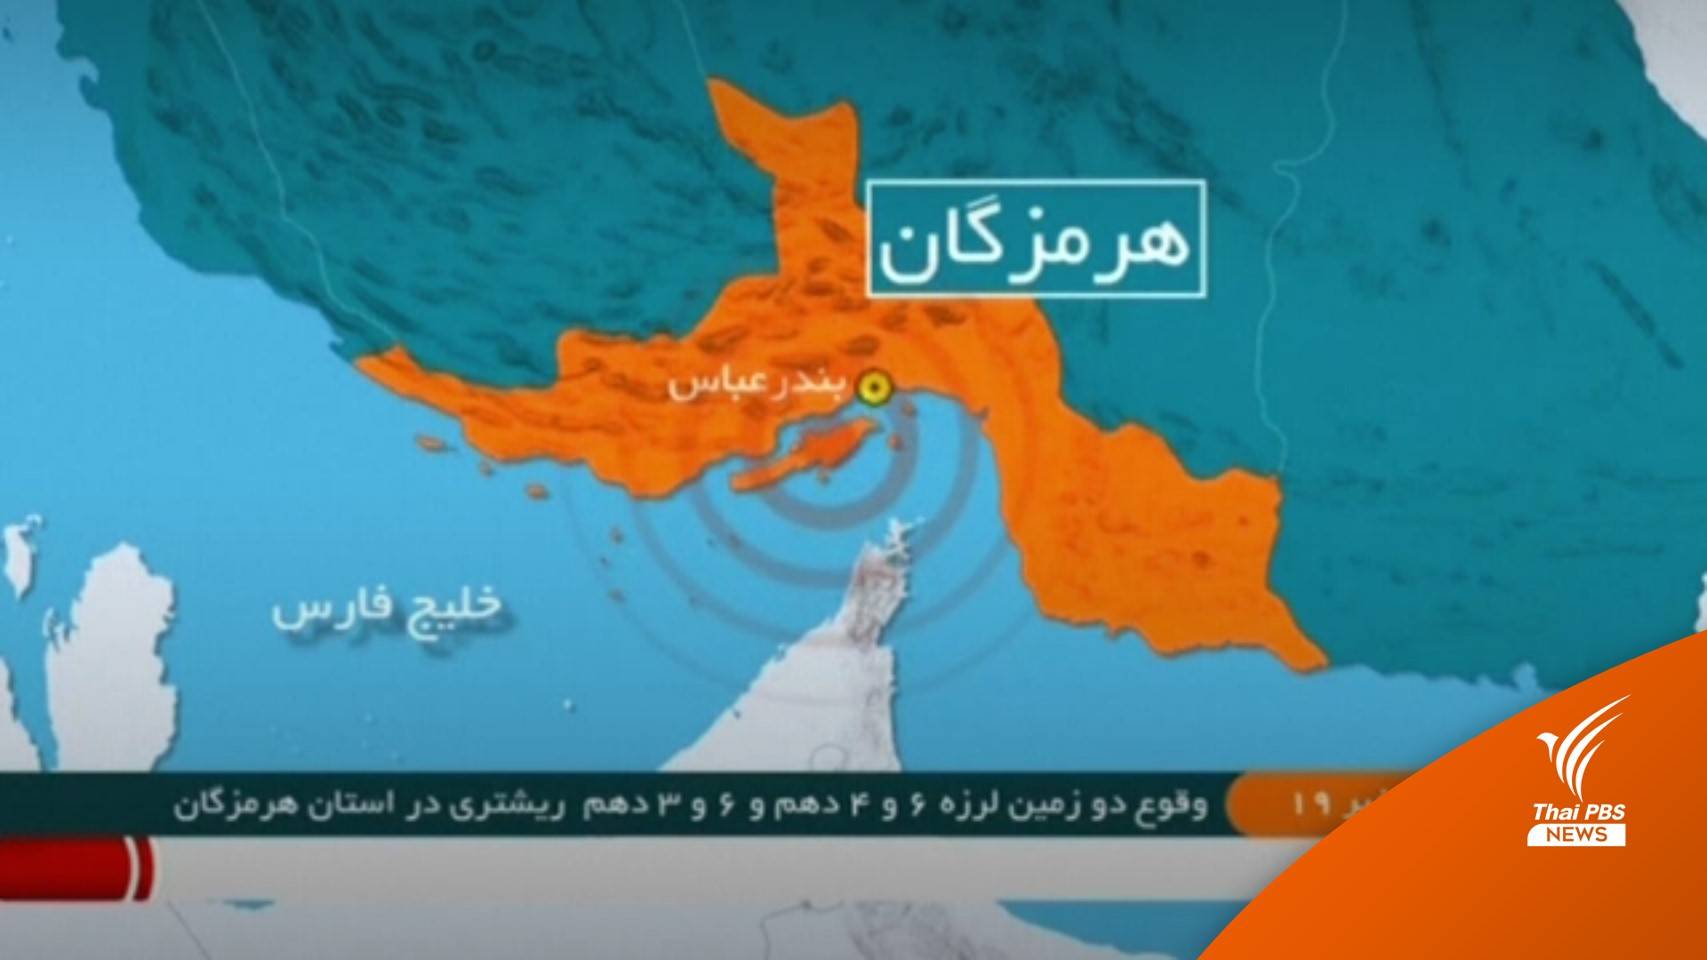 "อิหร่าน" เผชิญแผ่นดินไหวรุนแรง 2 ครั้งซ้อน